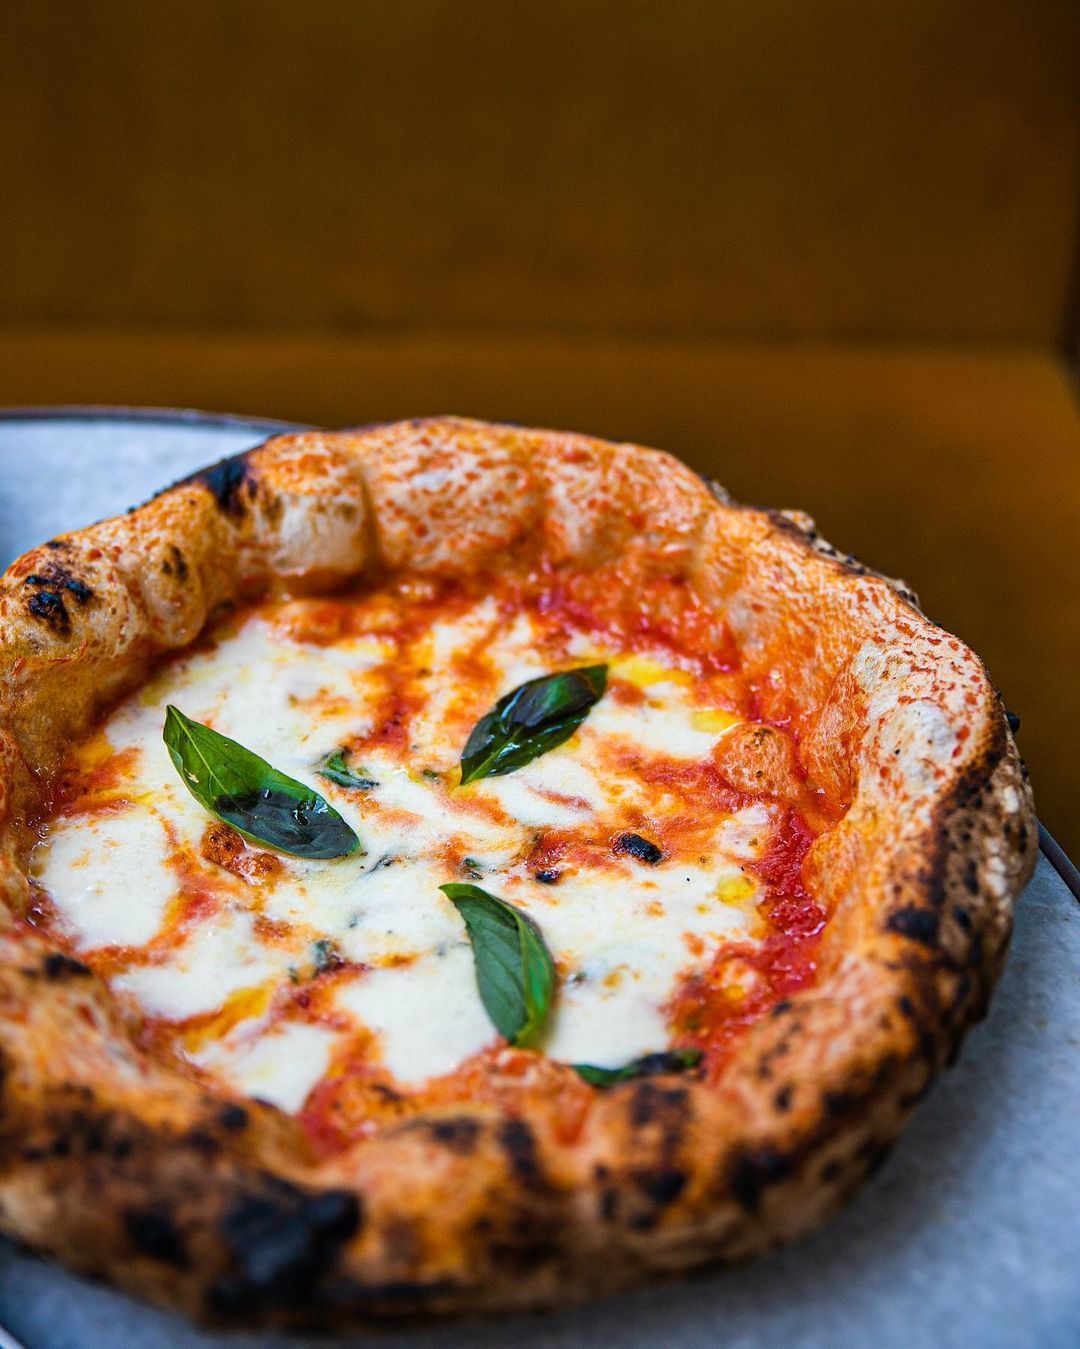 La pizza napolitana auténtica solo lleva tomate, mozzarella y hojas de albahaca fresca.